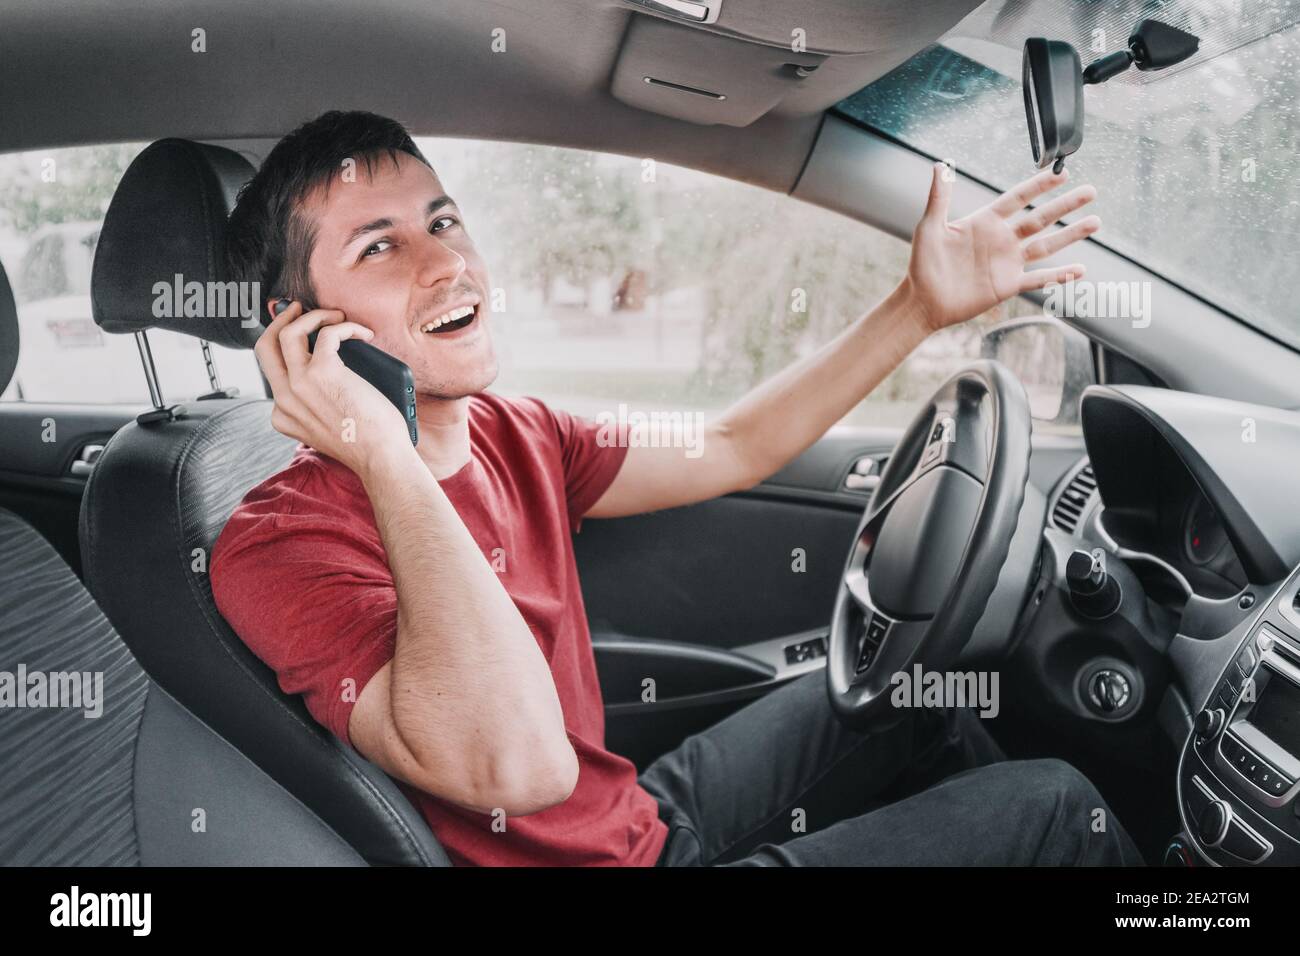 le conducteur de chatterbox conduit et parle à un ami au téléphone en même temps. Crée une situation de route dangereuse et le risque d'accident dû Banque D'Images